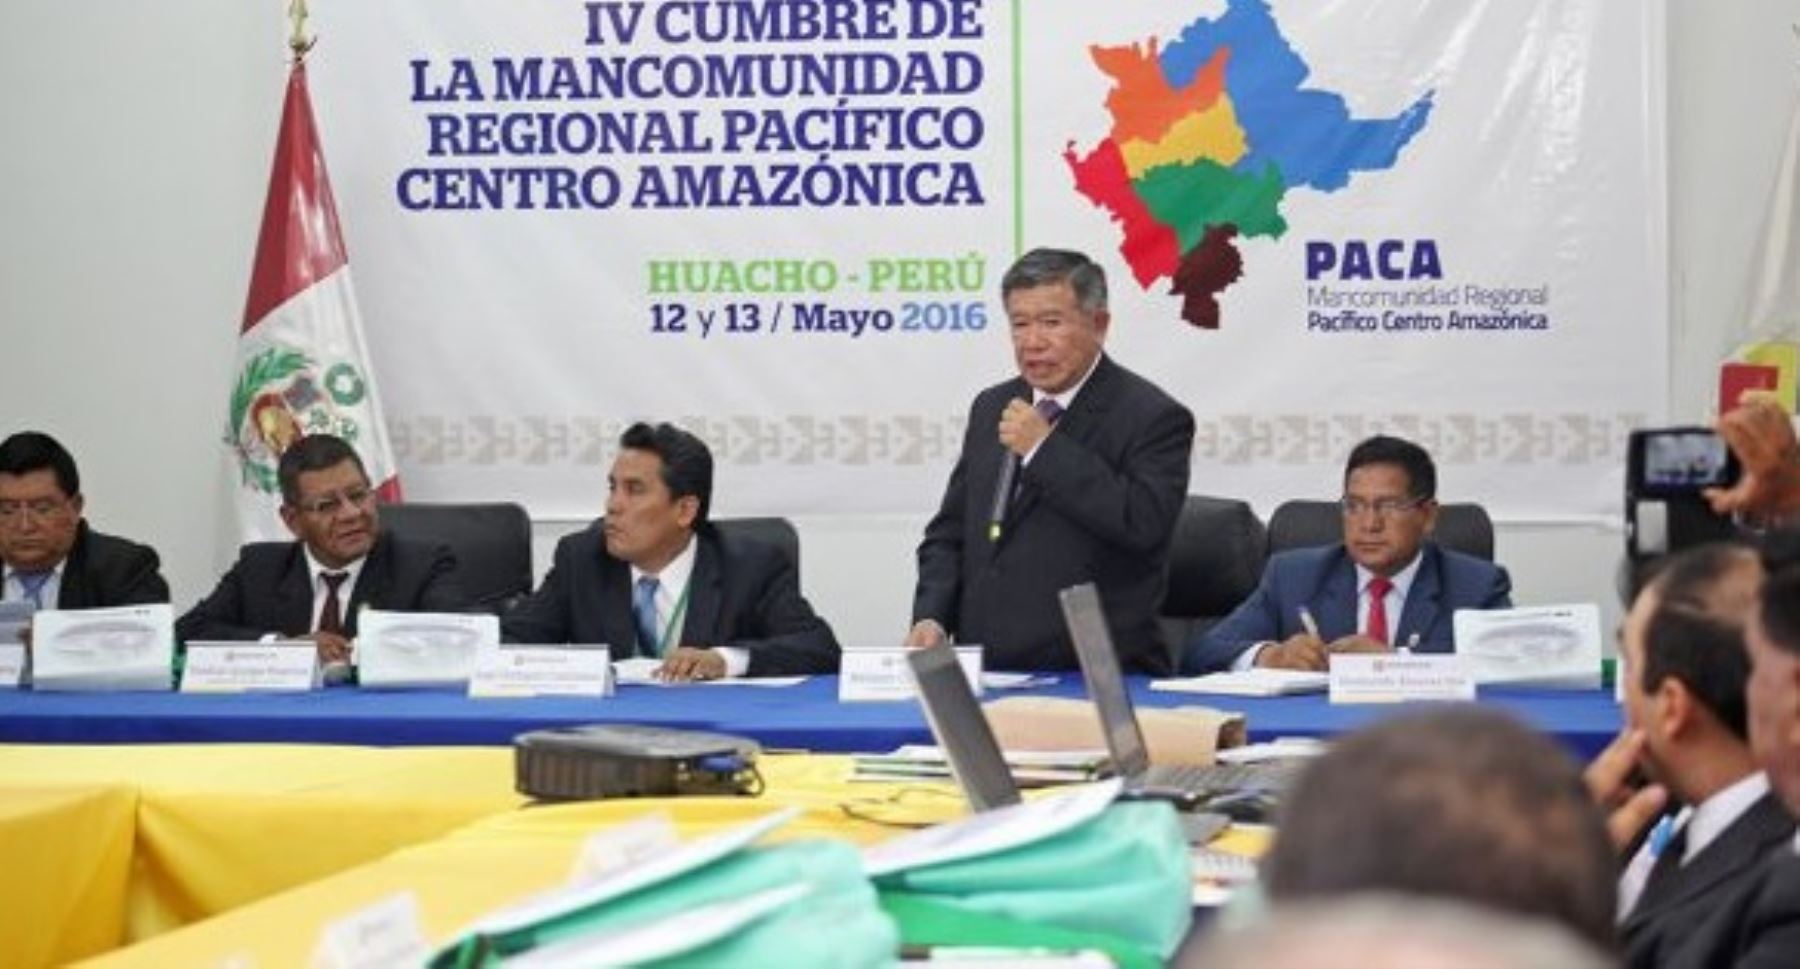 Los gobernadores regionales que integran la Mancomunidad Pacífico Centro Amazónica (PACA), reunidos en la ciudad de Huacho, acordaron gestionar mega proyectos viales y ferroviarios para formar corredores integrales de desarrollo económico y turístico.